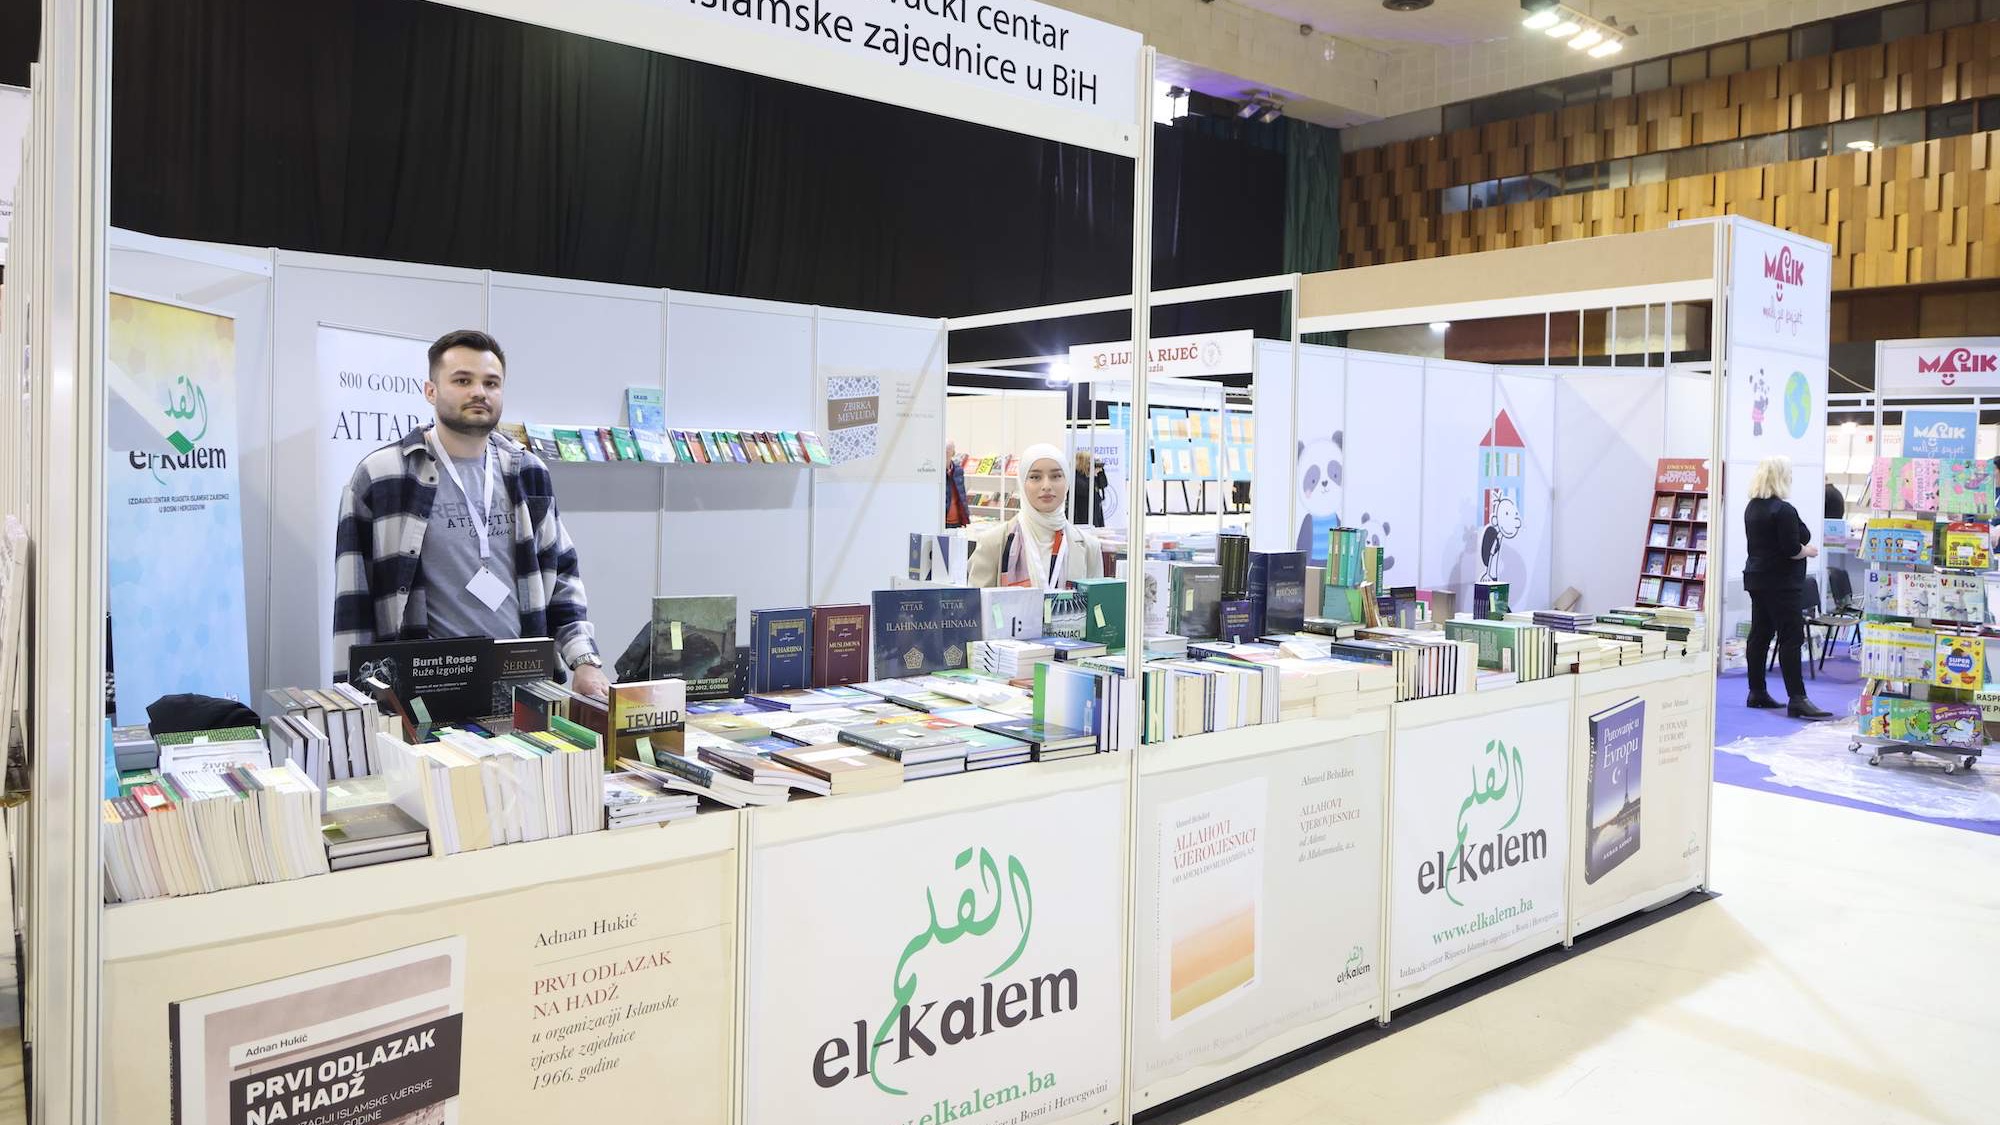 Otvoren 35. međunarodni sarajevski sajam knjiga: Među izlagačima i El-Kalem